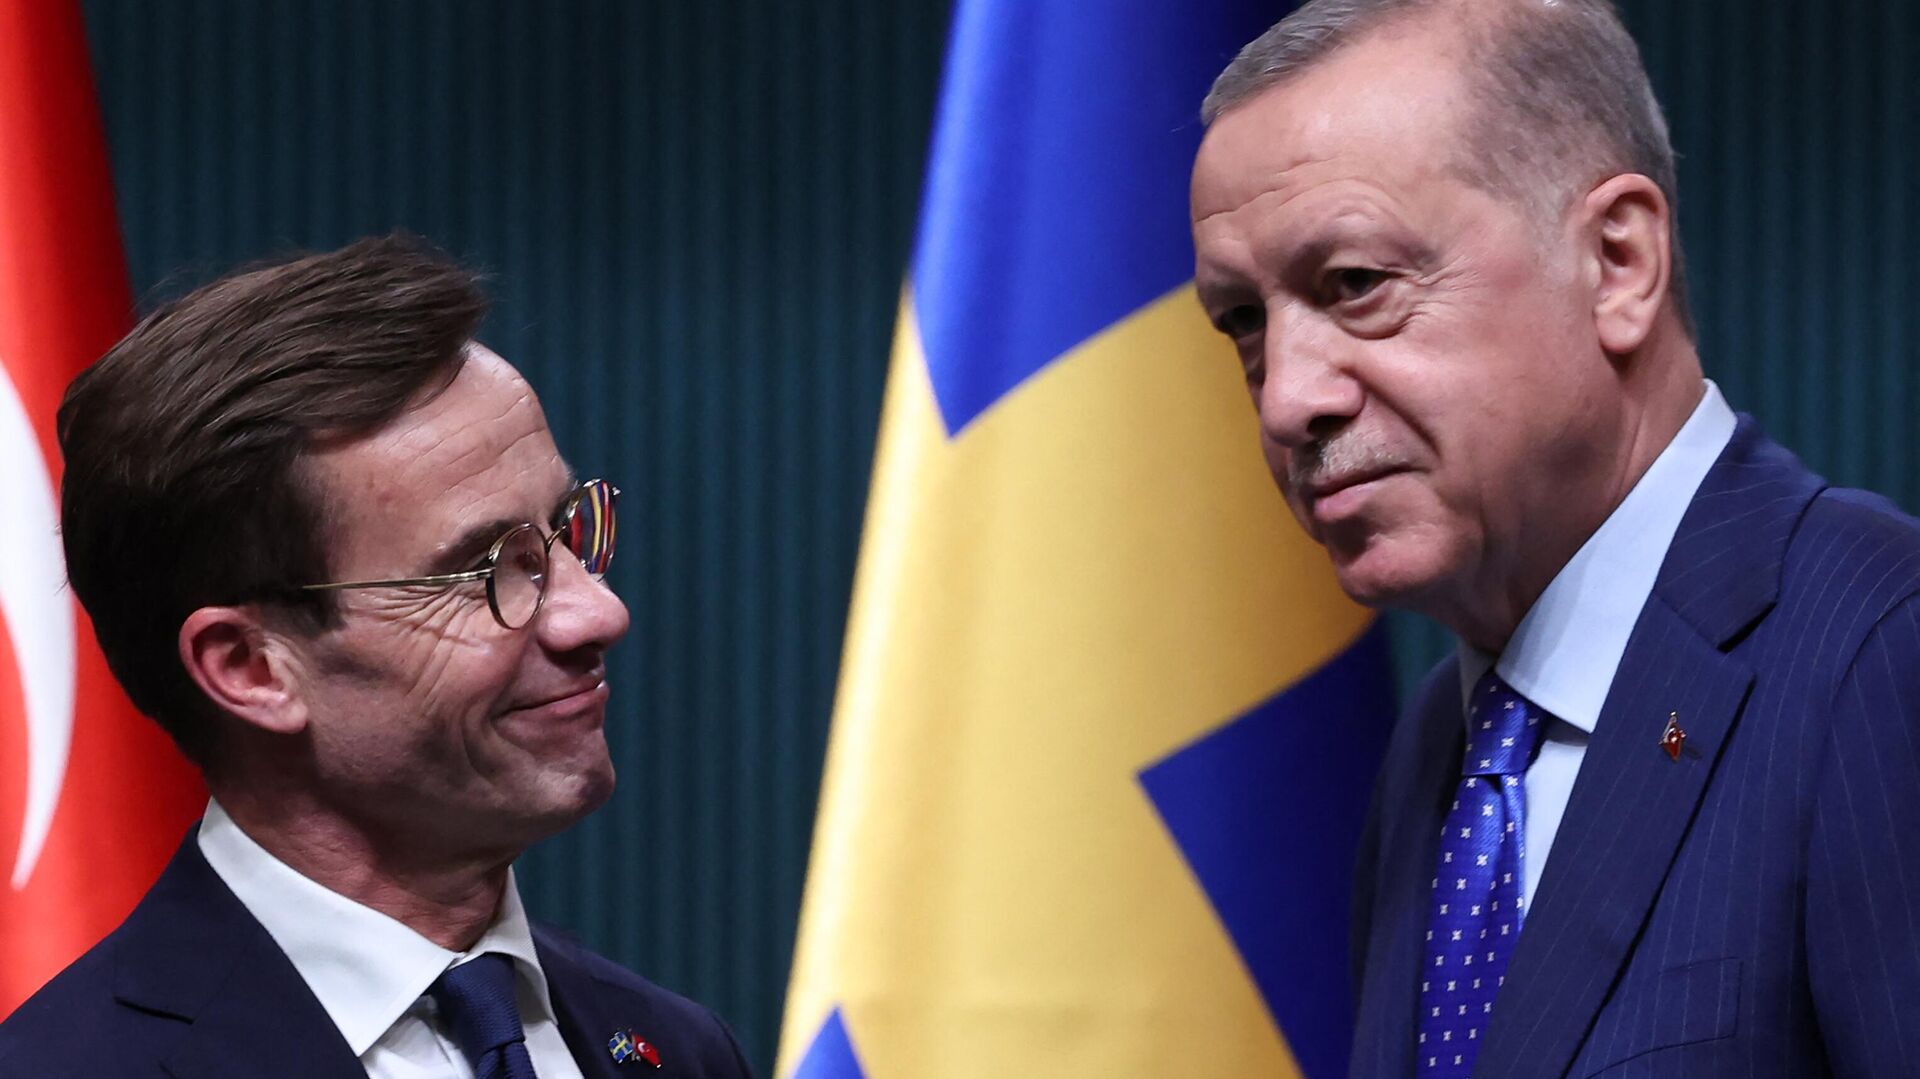 El primer ministro sueco, Ulf Kristersson, y el presidente turco, Recep Tayyip Erdogan, durante una rueda de prensa tras su reunión en el Palacio Presidencial de Ankara el 8 de noviembre de 2022 - Sputnik Mundo, 1920, 25.11.2022